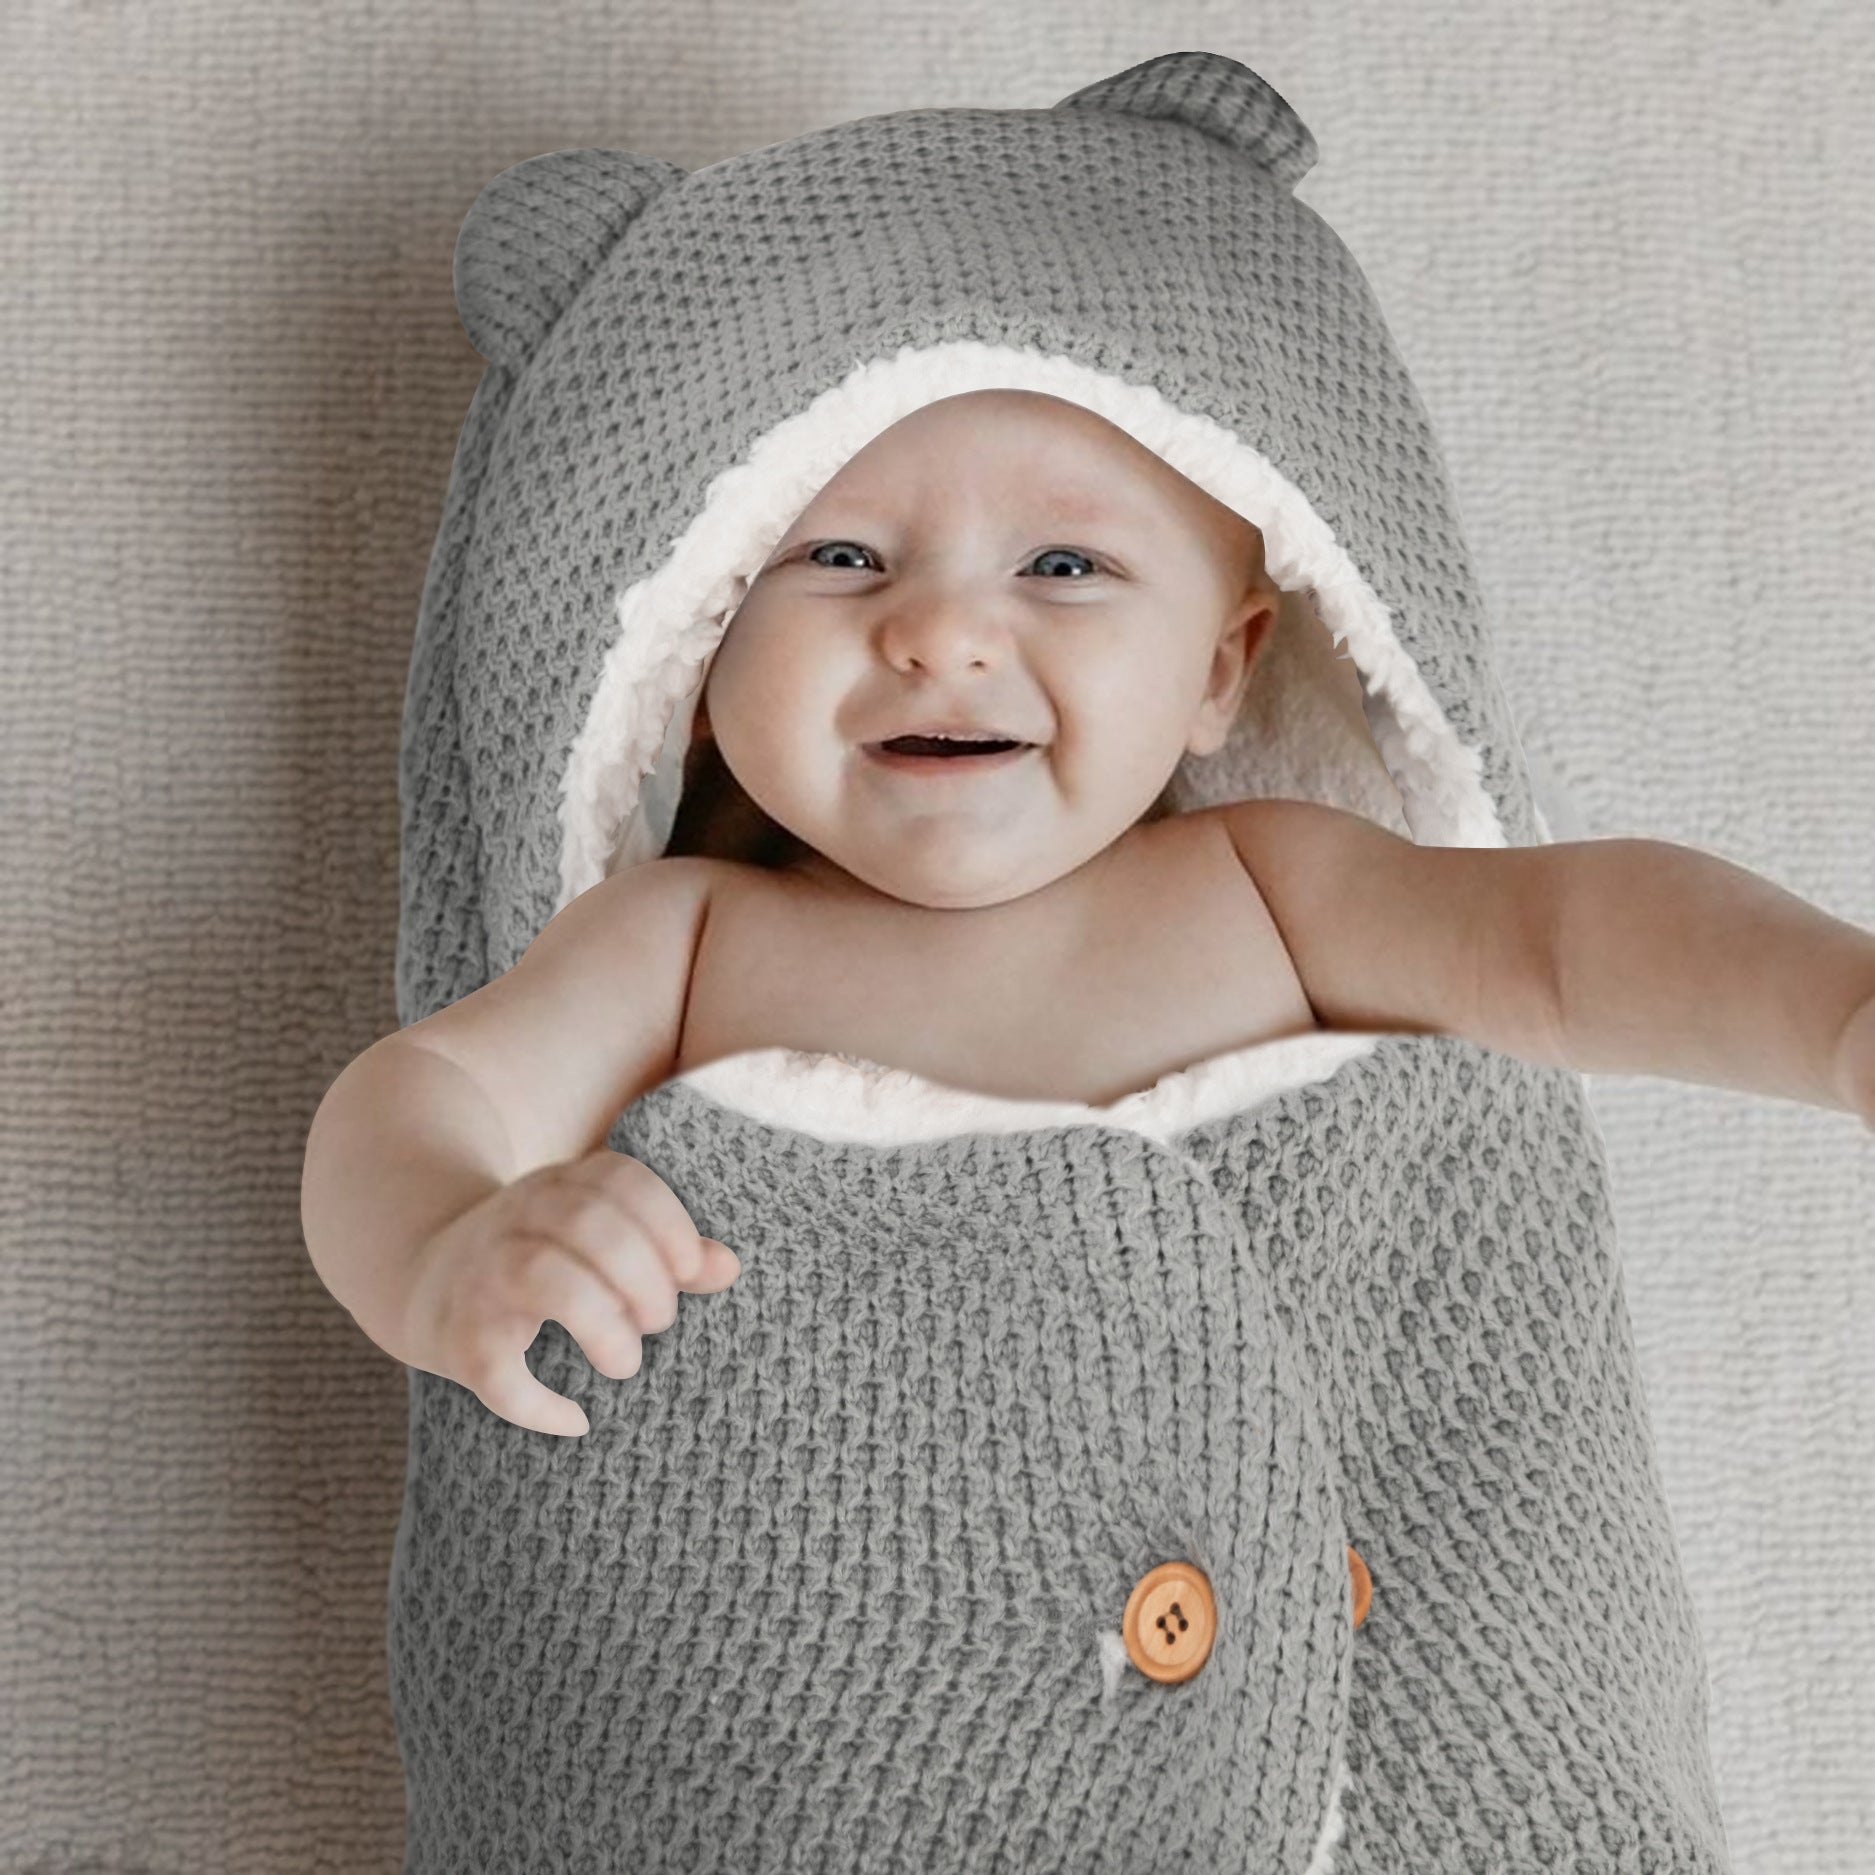 Couverture d'emmaillotage mignonne en tricot, sac de couchage pour bébé nouveau-né